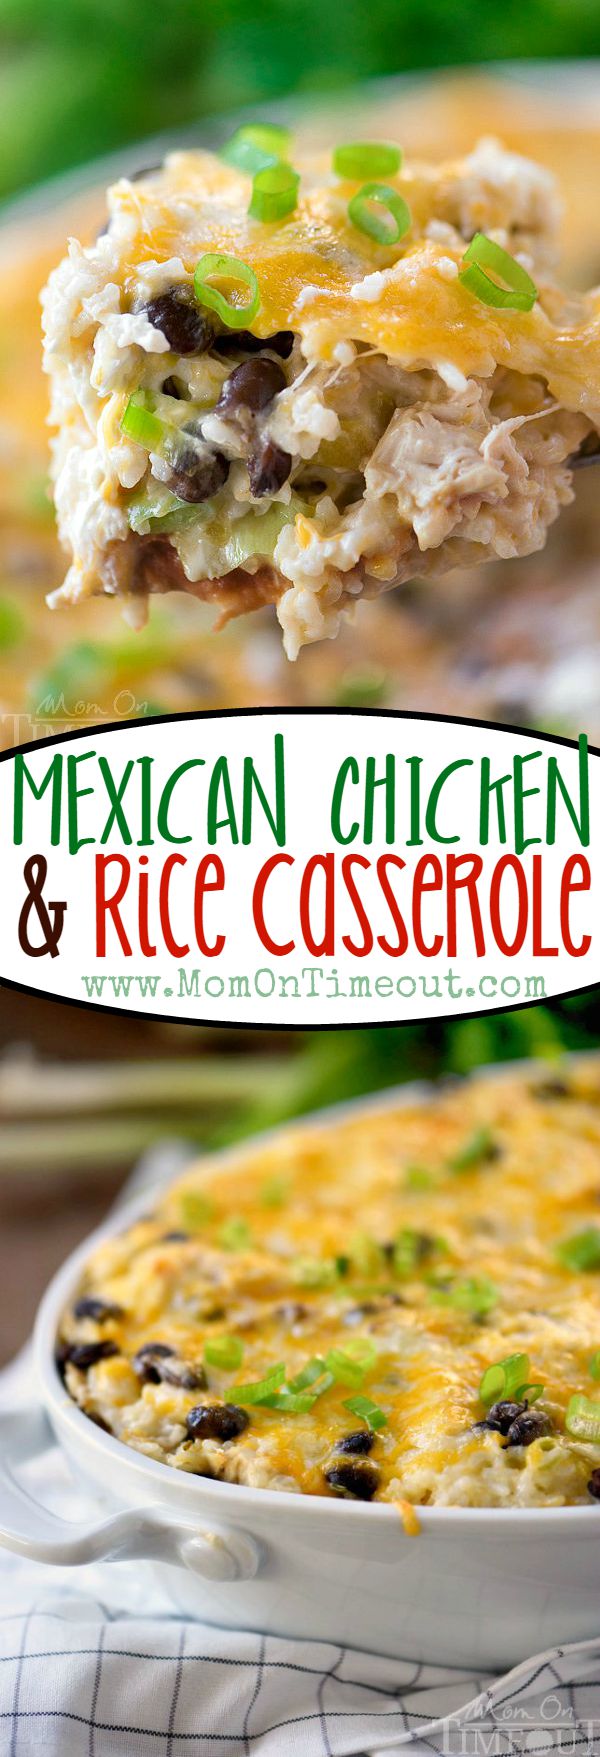 mexican-chicken-rice-casserole-recipe-collage